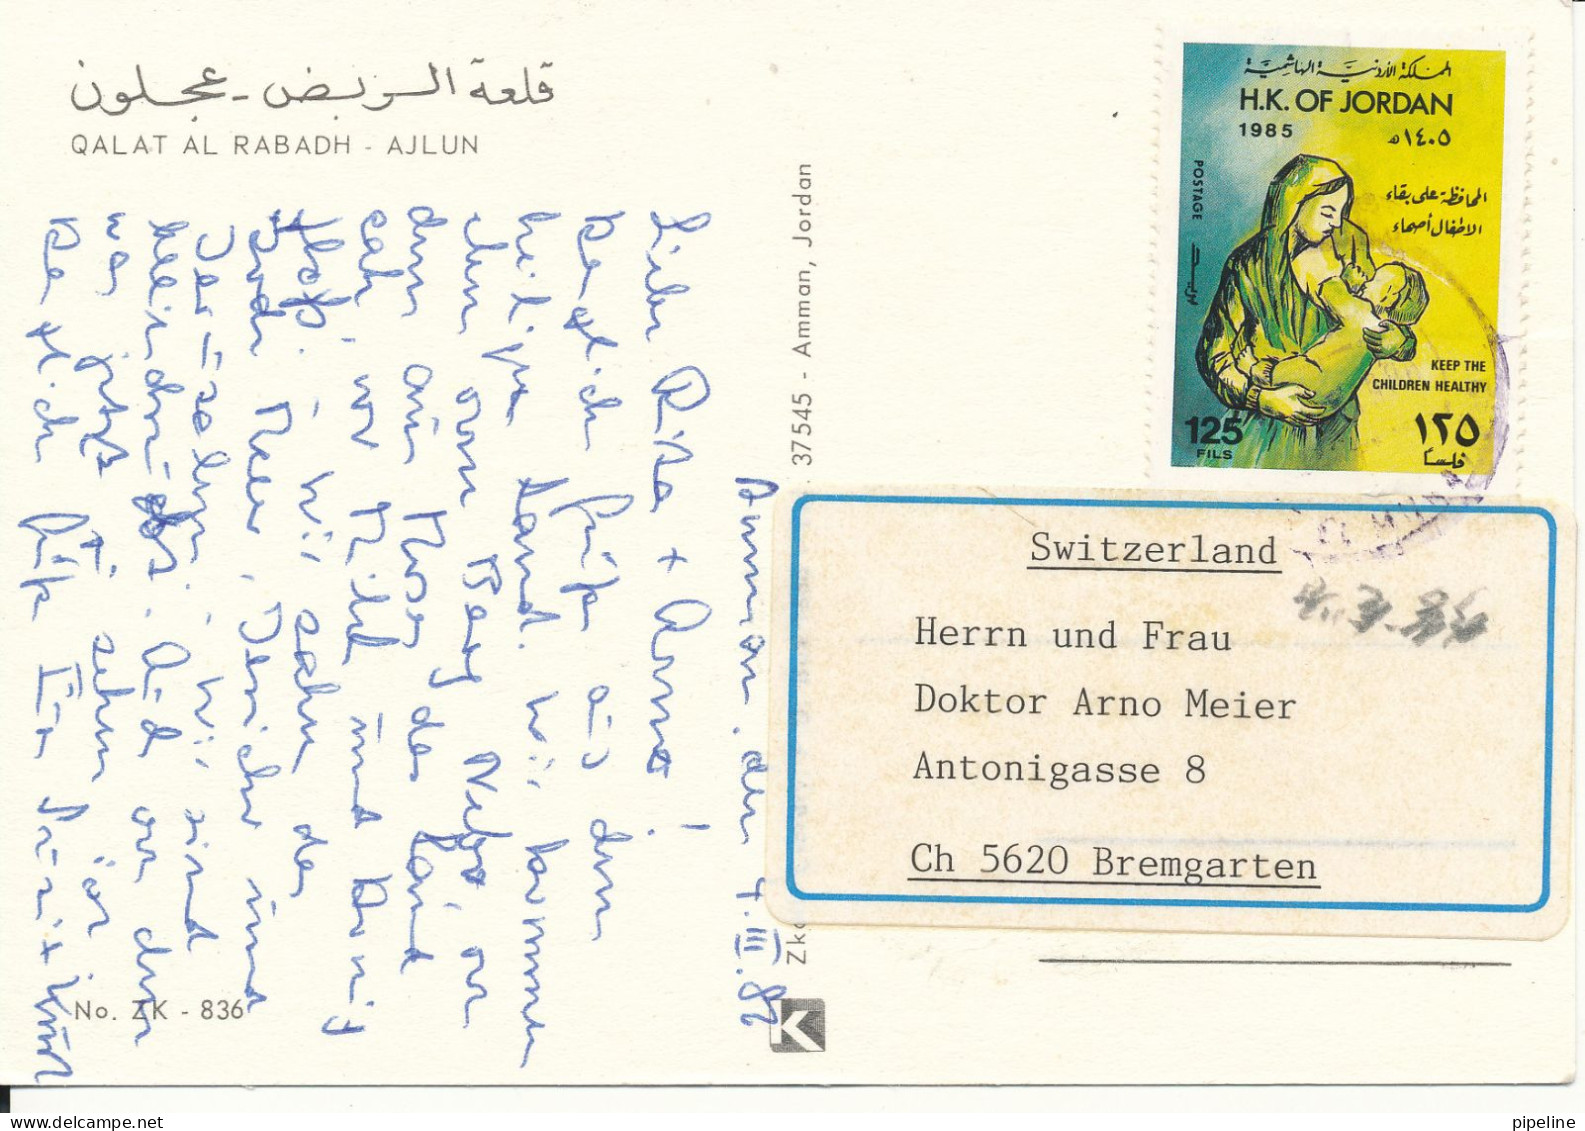 Jordan Postcard Sent To Switzerland 4-3-1986 (Qalat Al Rabadh Ajlun) - Jordanie